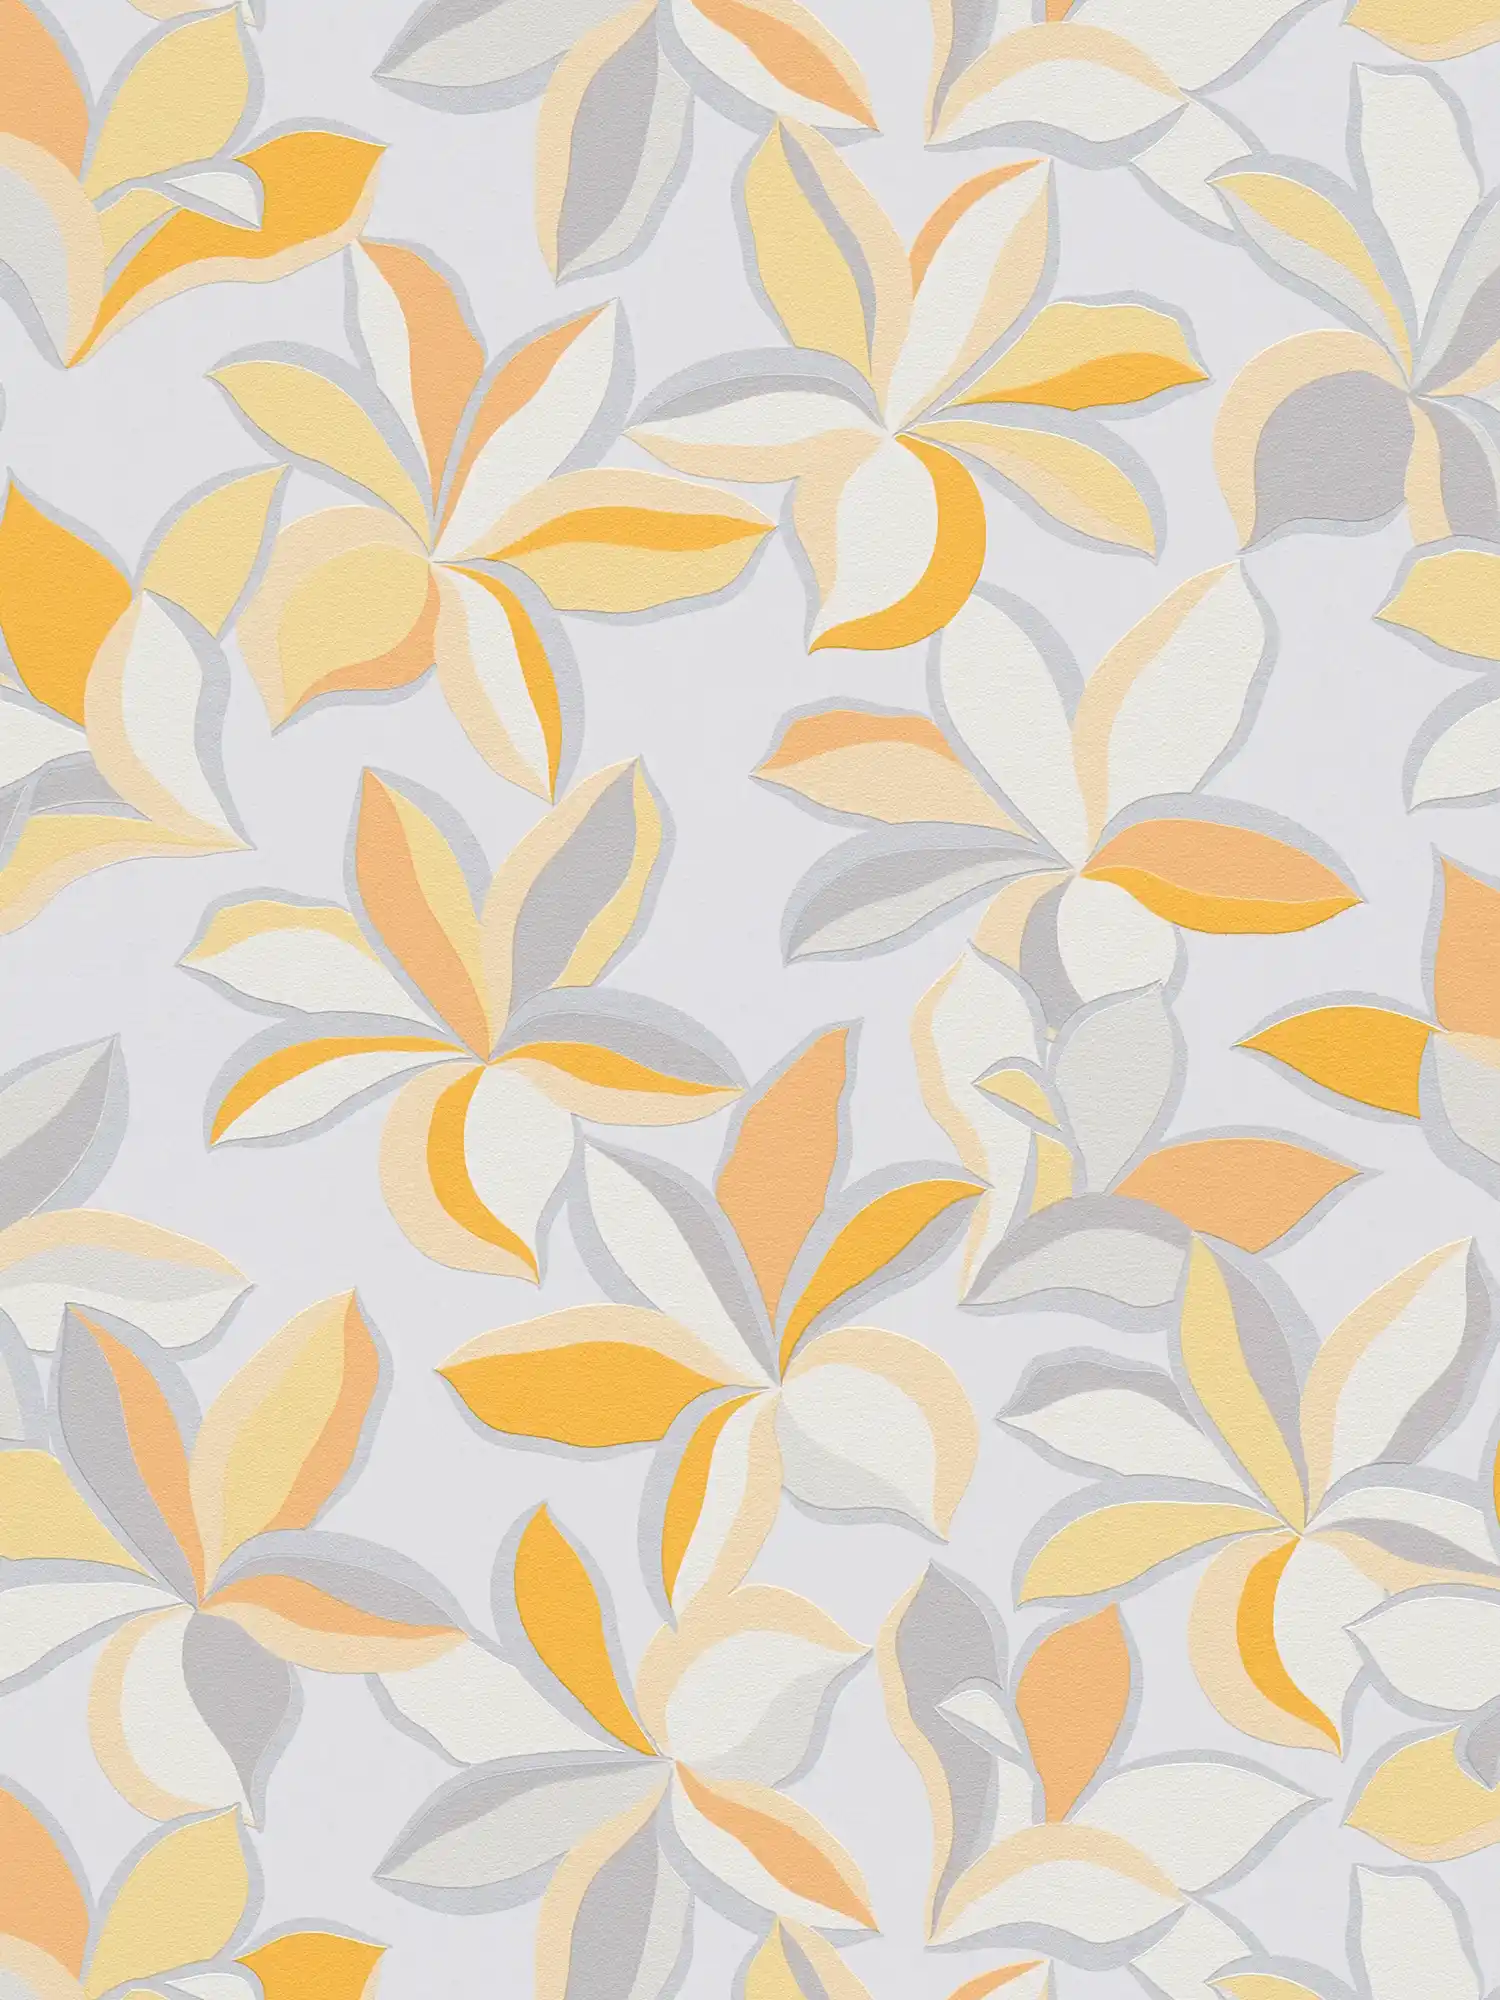 Vliesbehang met bloemenmotief & metallic look - geel, oranje, grijs
